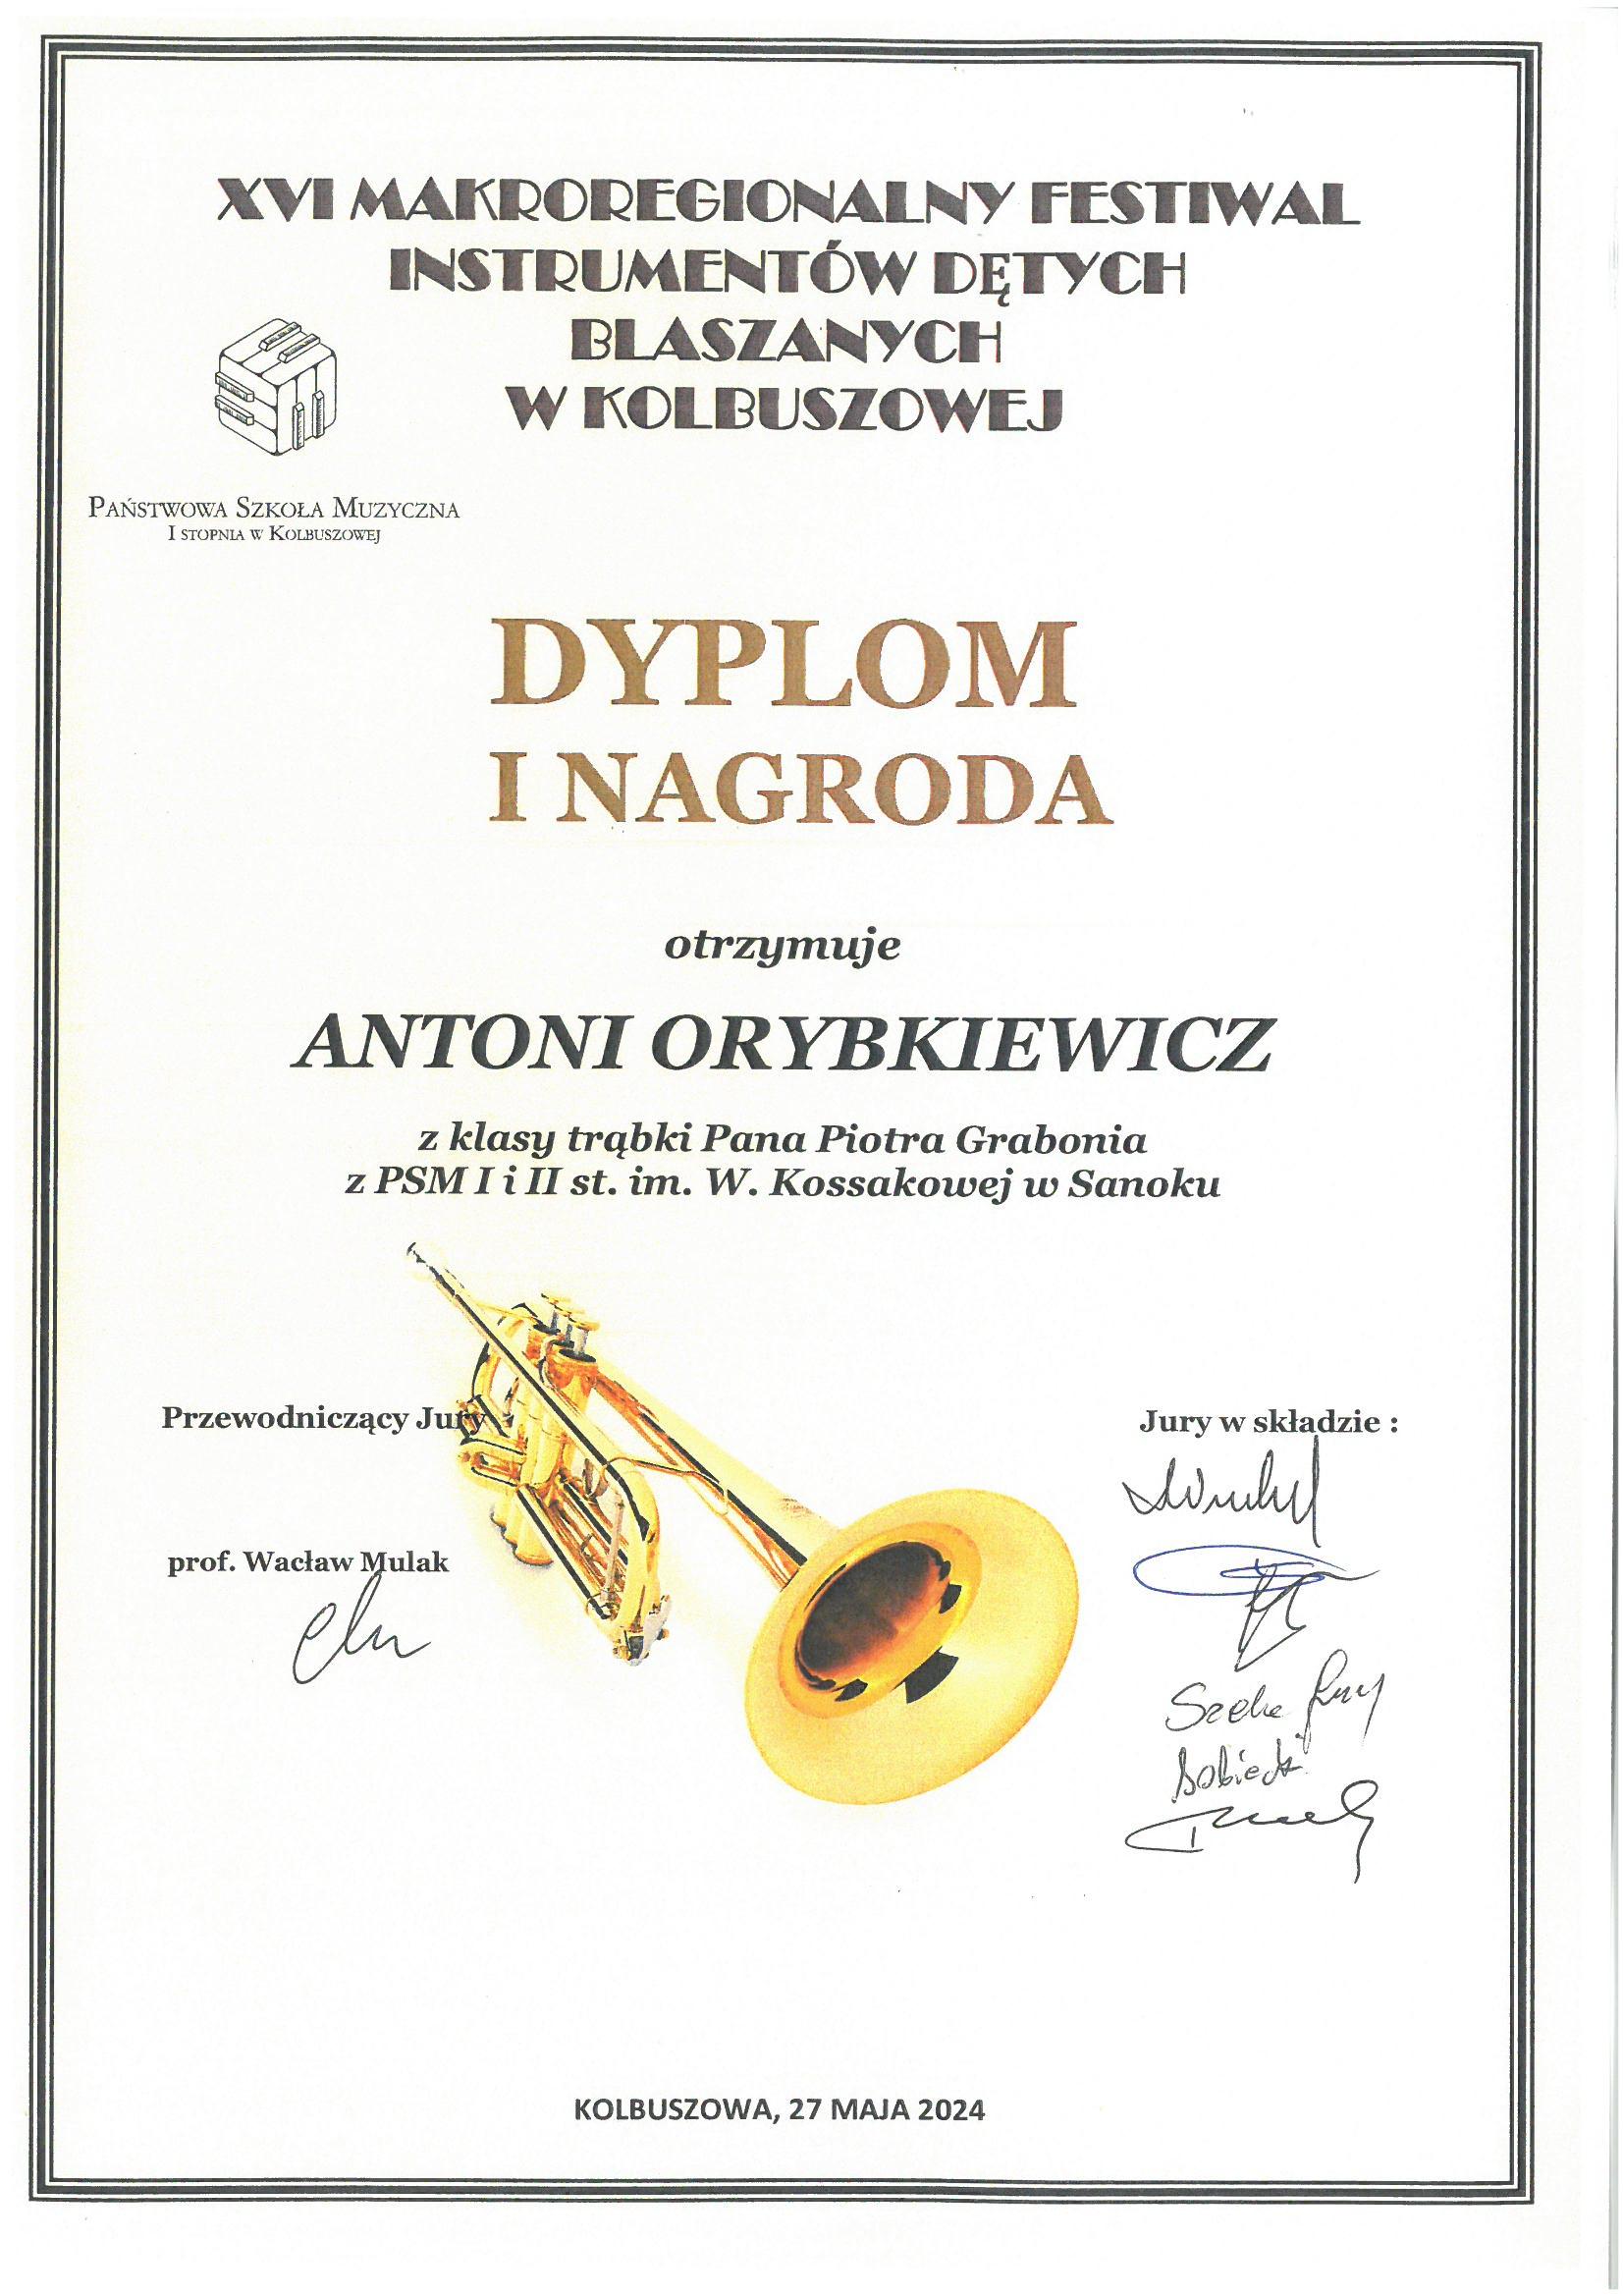 Dyplom - Makroregionalny Festiwal Instrumentów Dętych Blaszanych w Kolbuszowej - Antoni Orybkiewicz 1 nagroda. Białe tło, czarne litery, na środku zdjęcie trąbki.